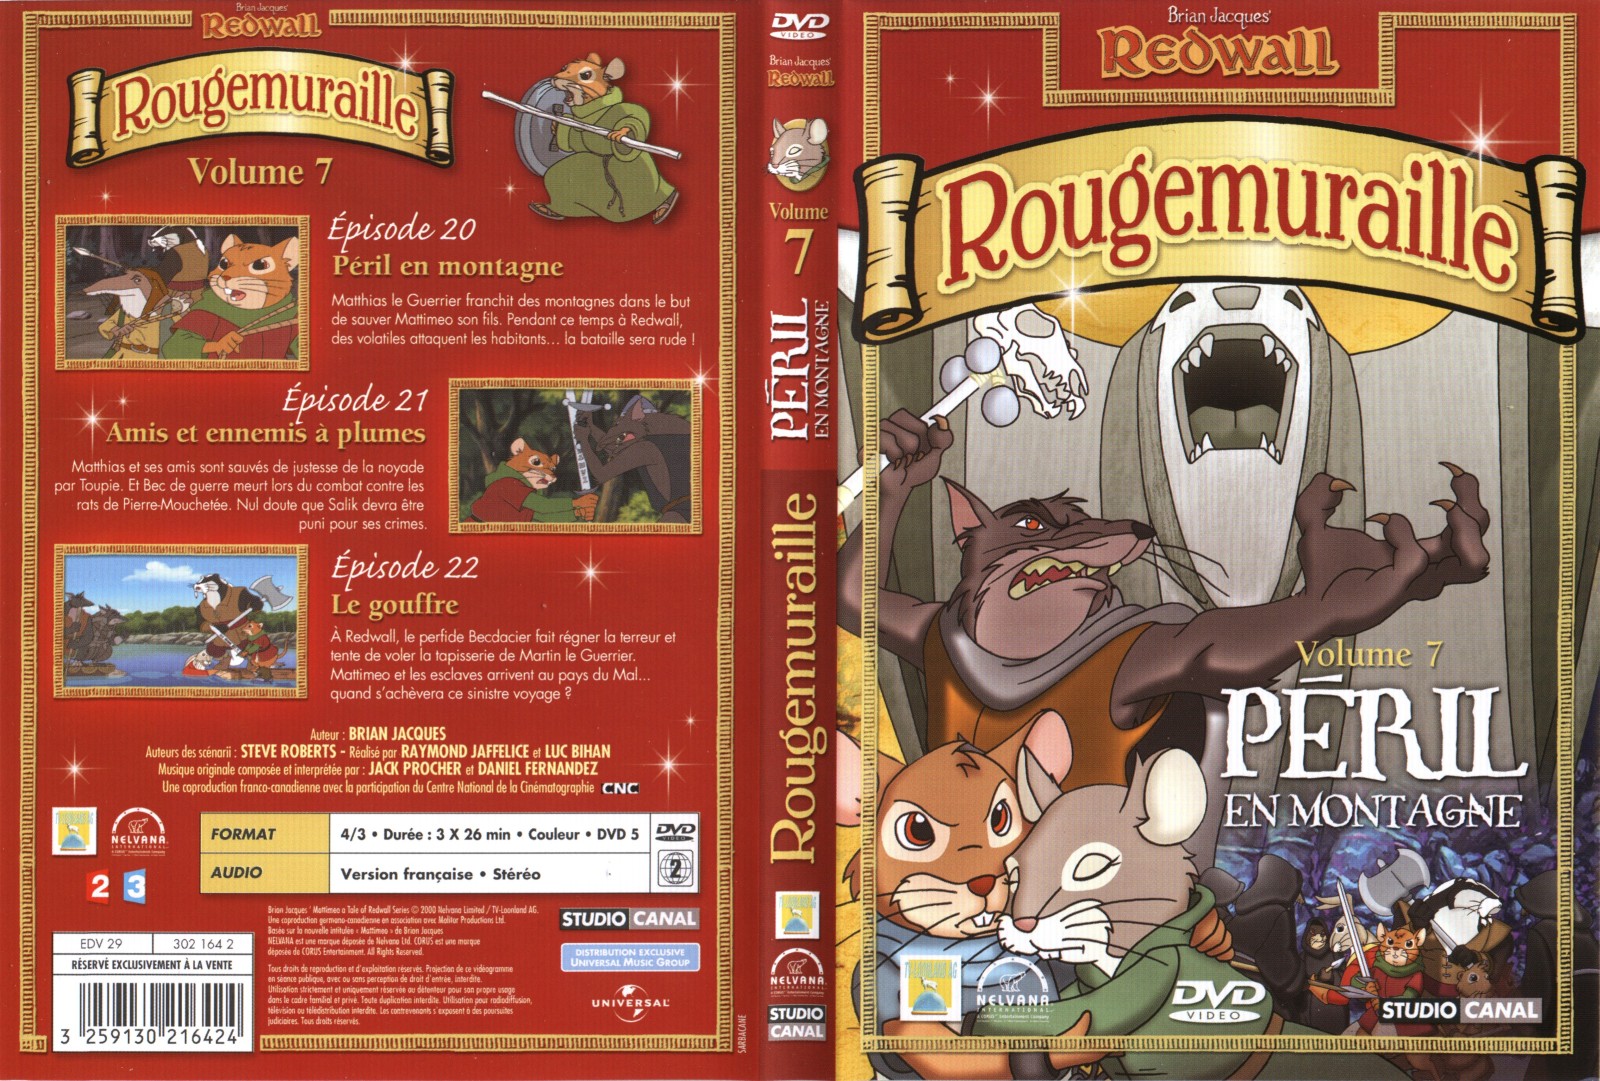 Jaquette DVD Rougemuraille vol 7